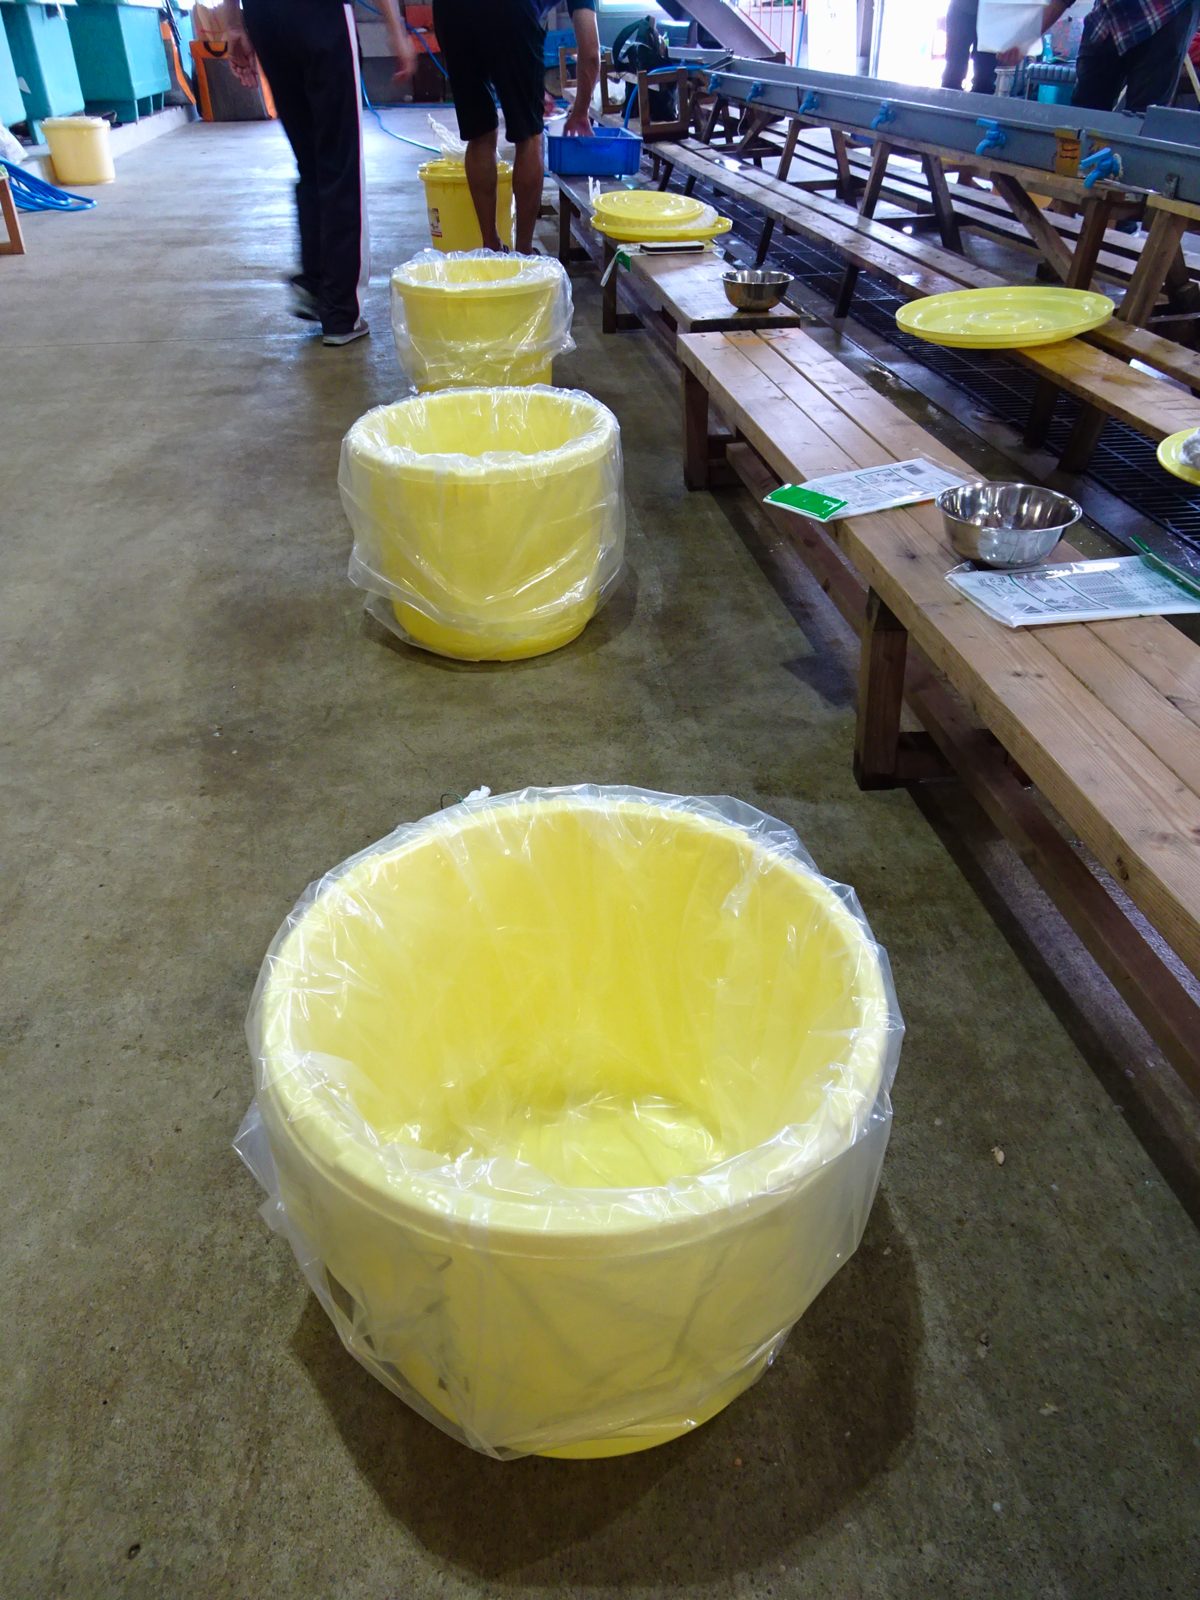 プラスチックの黄色い漬物樽に大きなビニール袋を2重にして入れられているモノが3個並んでいる。